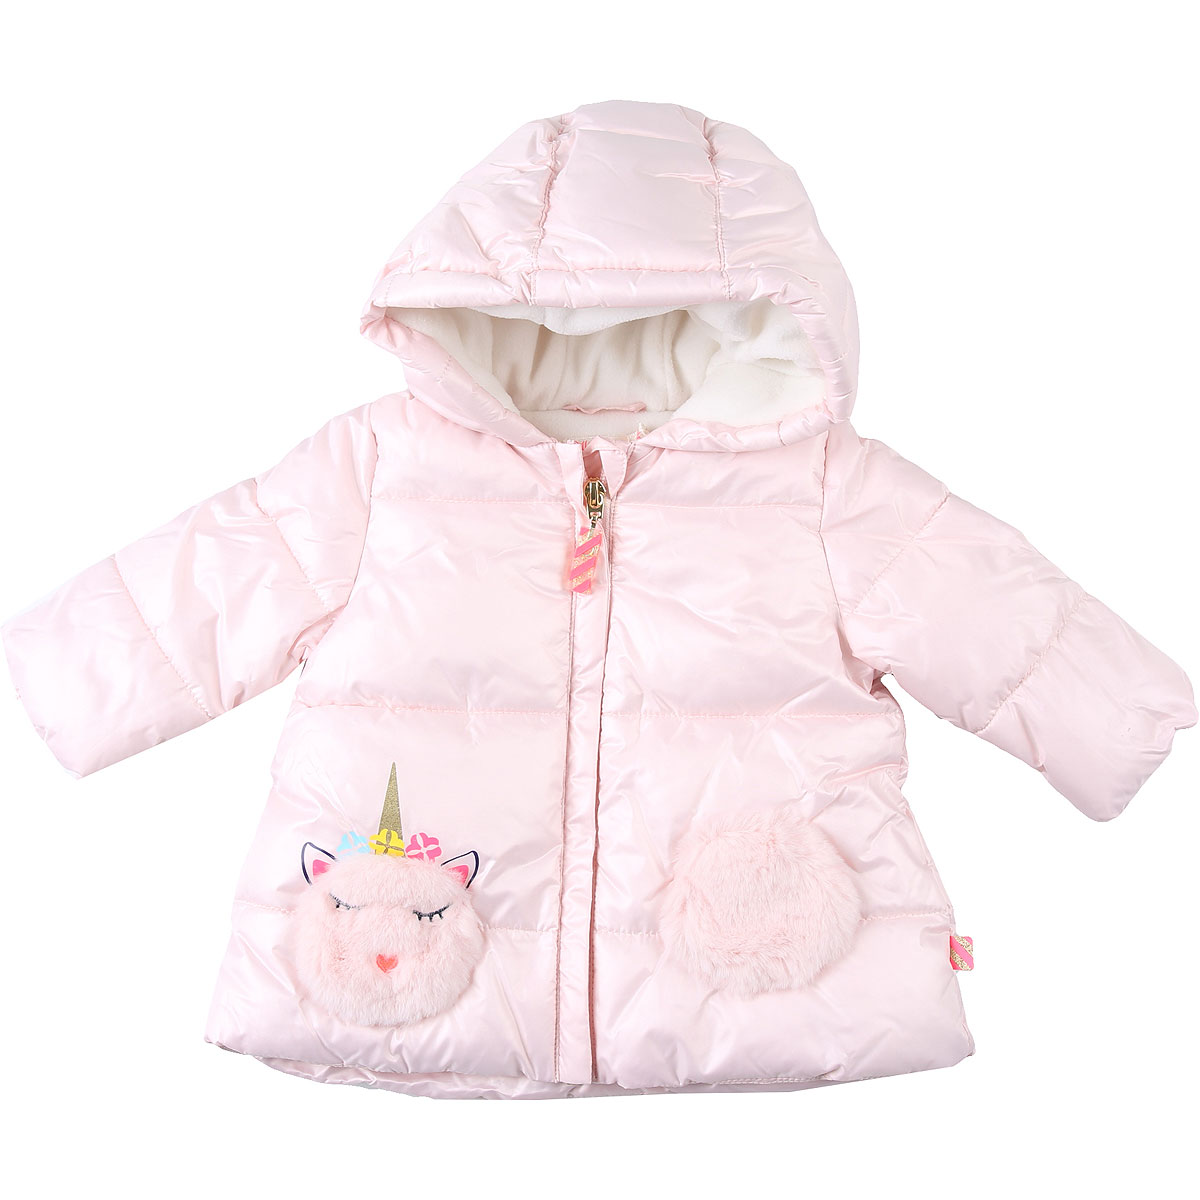 Billieblush Baby Daunen Jacke für Mädchen Günstig im Sale, Pink, Polyester, 2017, 12M 2Y 6M 9M